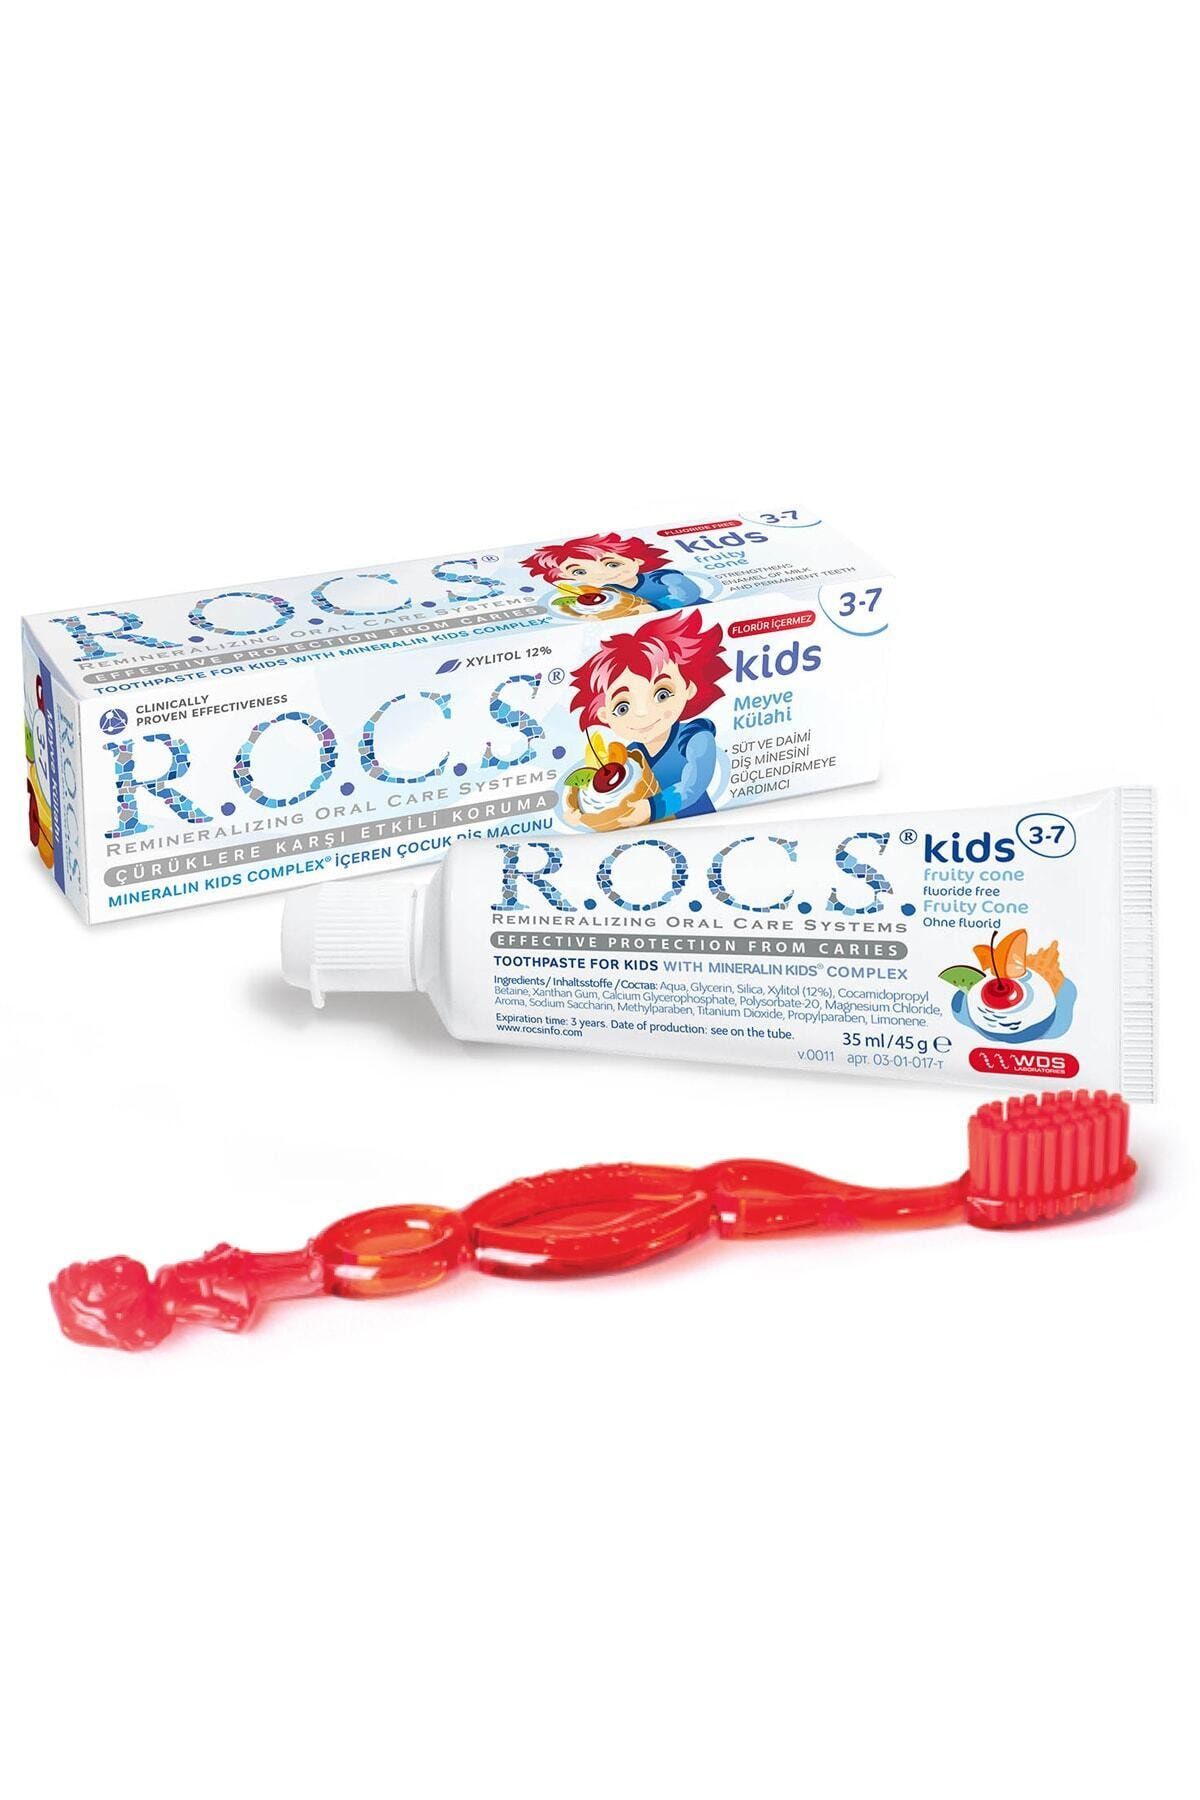 R.O.C.S. Kids 3-7 Yaş Meyve Külahı 35 ml Diş Macunu ve Fırçası Seti Kırmızı